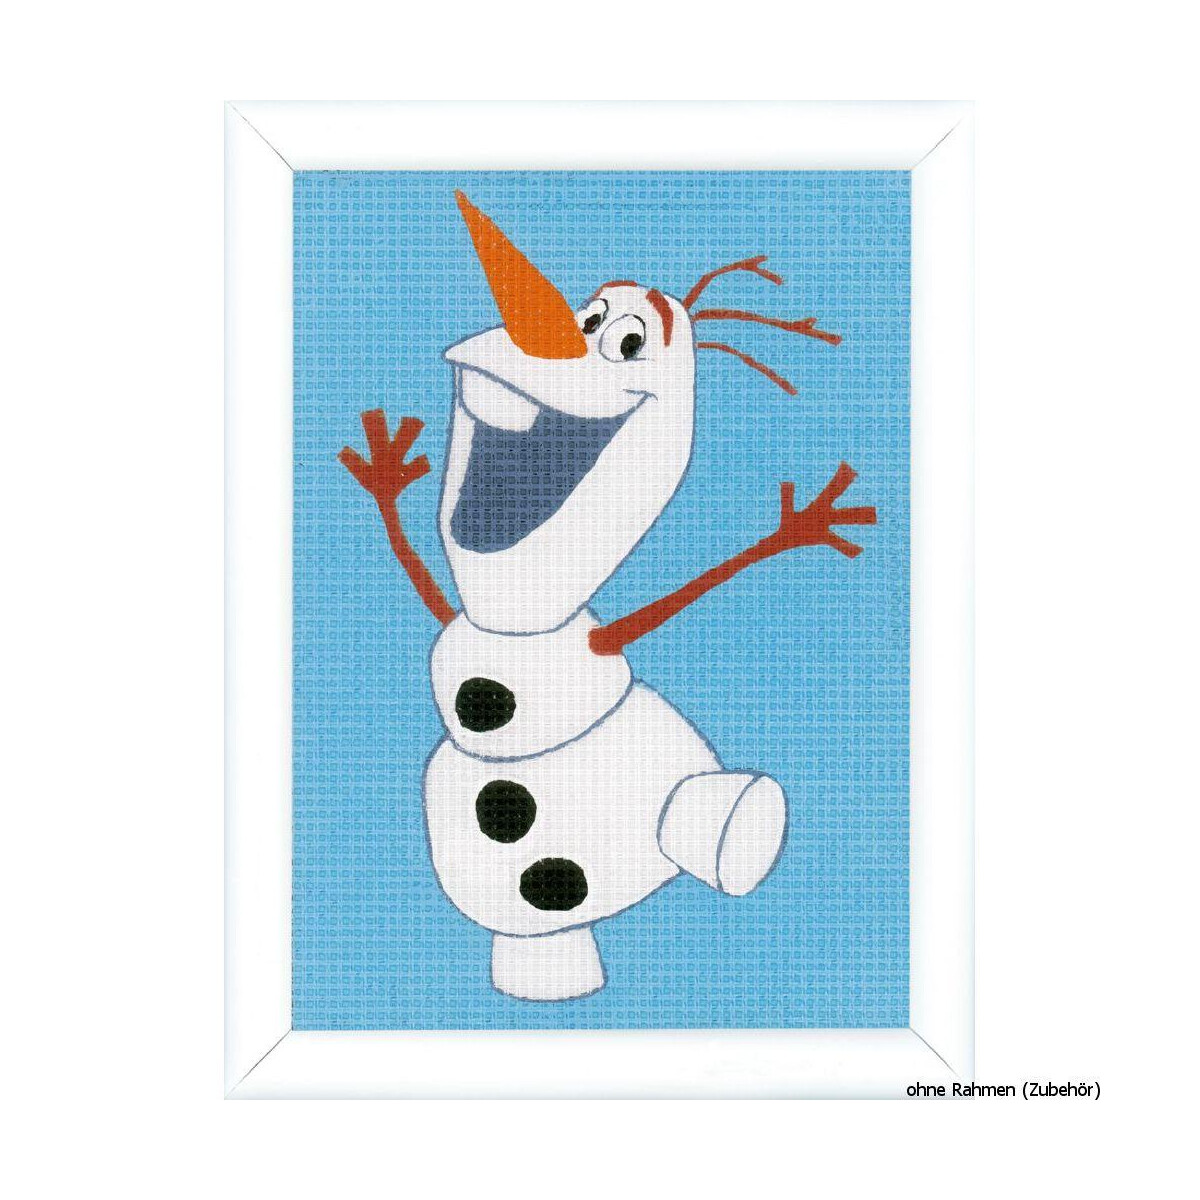 Vervaco borduurpakket "Olaf", borduurmotief...